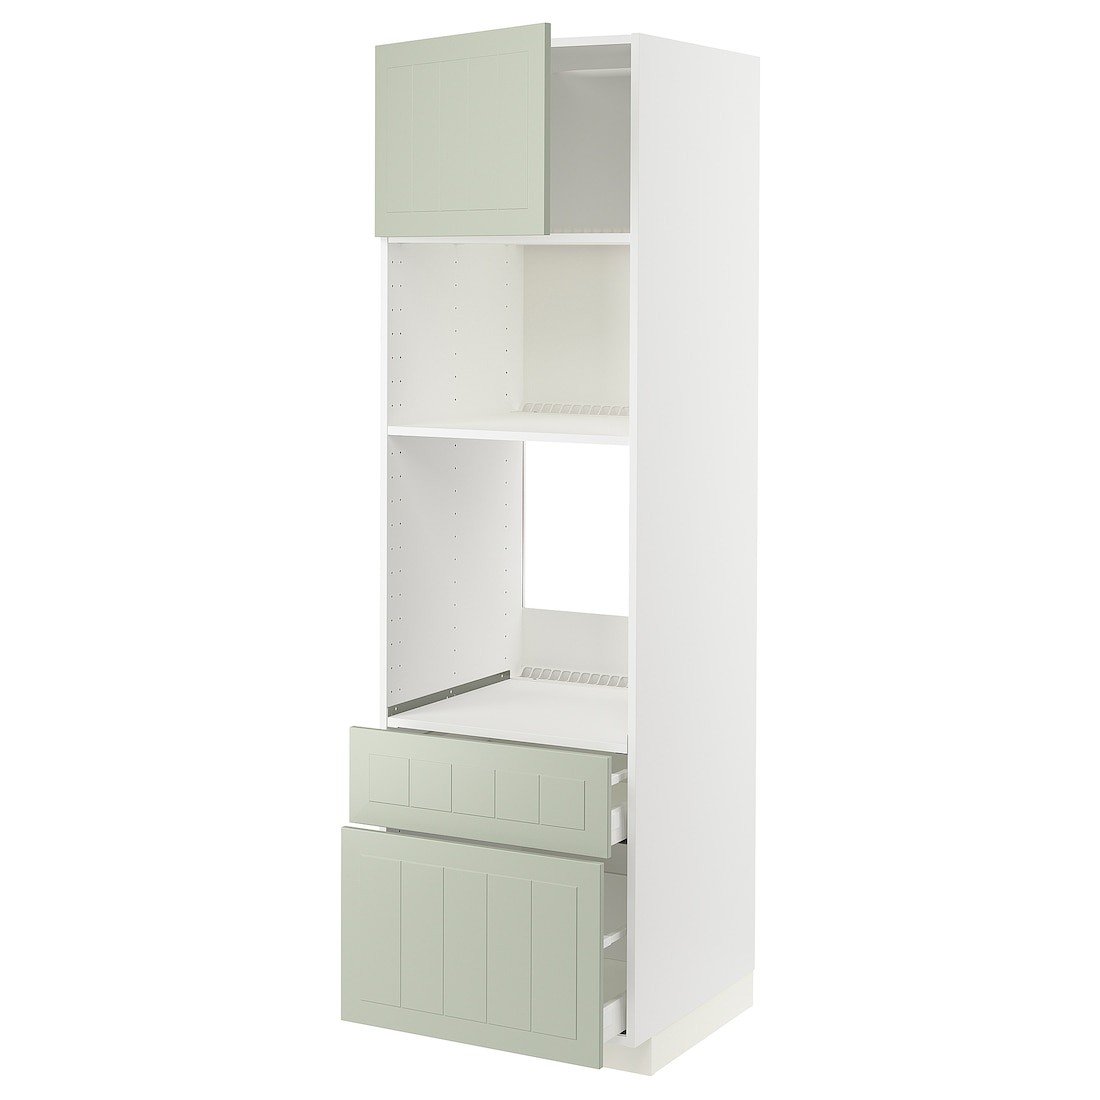 IKEA METOD МЕТОД / MAXIMERA МАКСИМЕРА Высокий шкаф для духовки / микроволновки с дверями / 2 ящиками, белый / Stensund светло-зеленый, 60x60x200 см 09487247 | 094.872.47